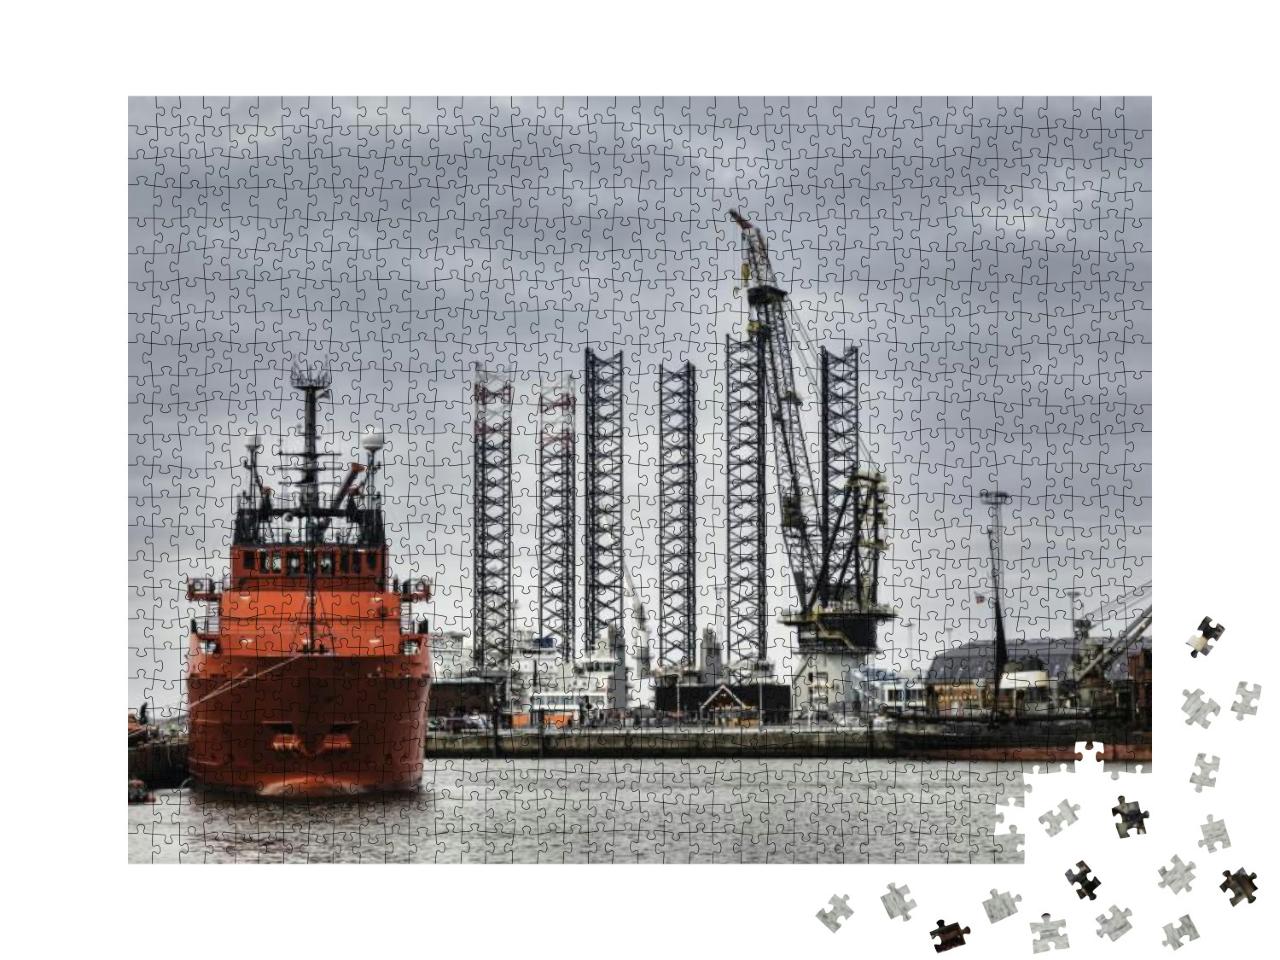 Puzzle 1000 Teile „Offshore-Hafen in Esbjerg, Dänemark“